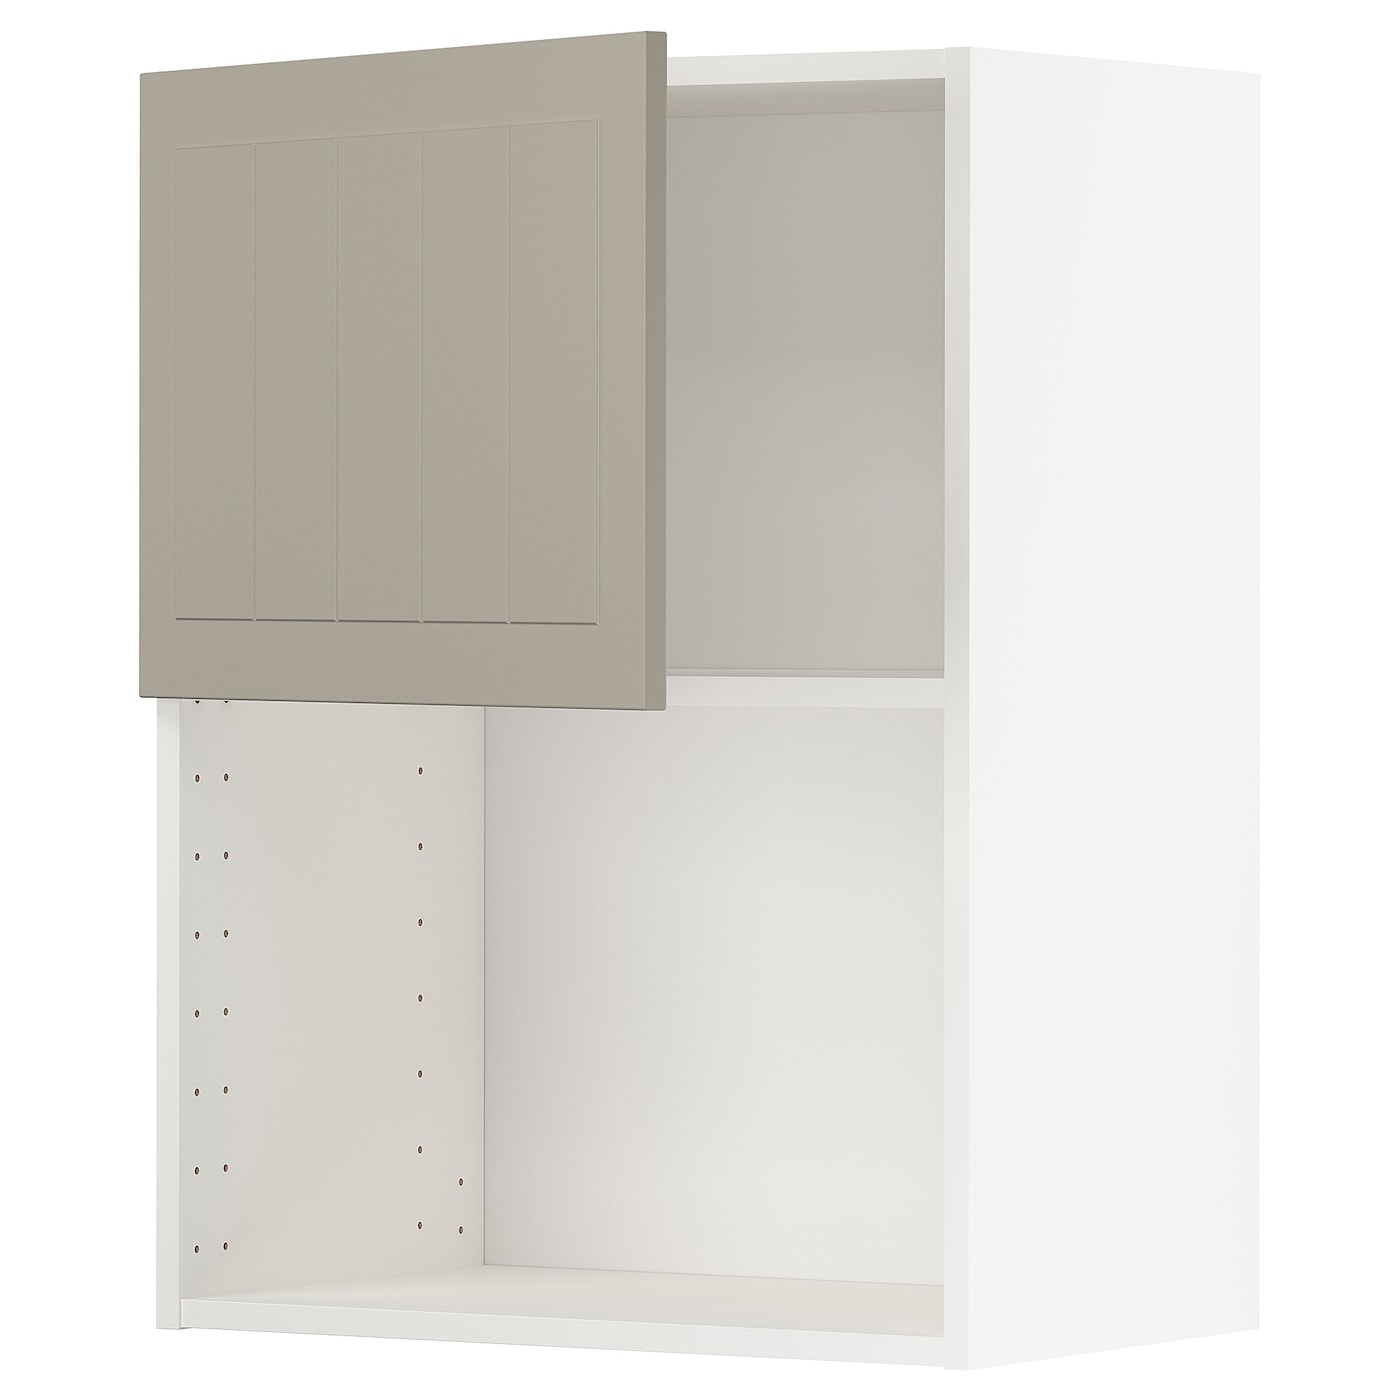 METOD Навесной шкаф - METOD IKEA/ МЕТОД ИКЕА, 80х60 см, черный/светло-коричневый